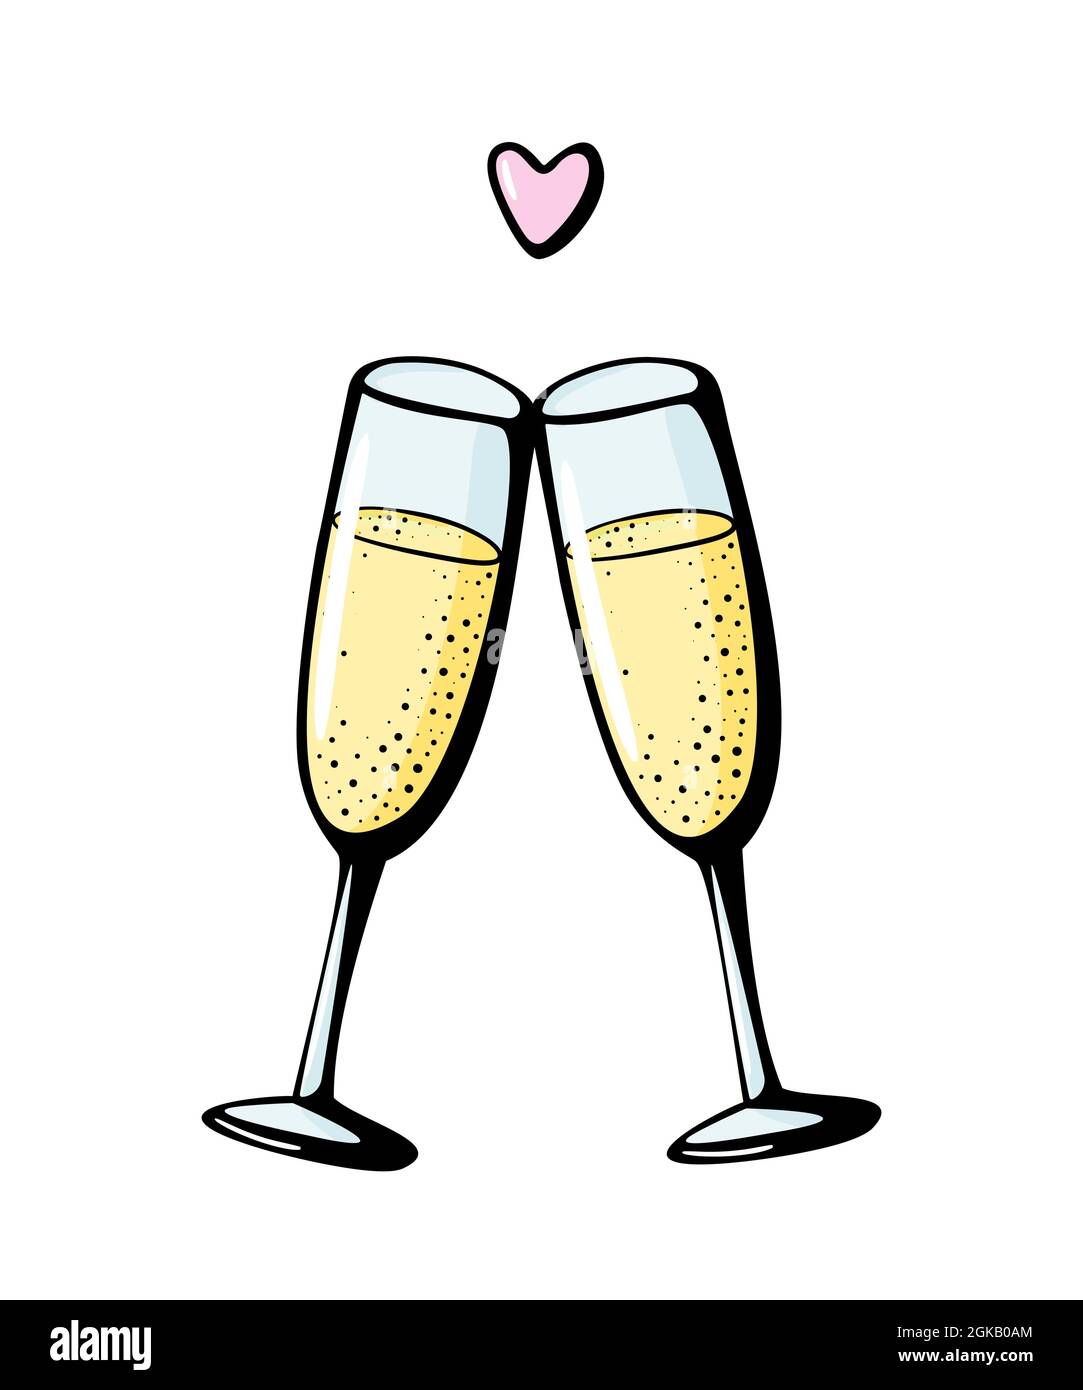 Dos Copas De Champagne Ilustración Del Vector De La Silueta Ilustraciones  svg, vectoriales, clip art vectorizado libre de derechos. Image 63587464